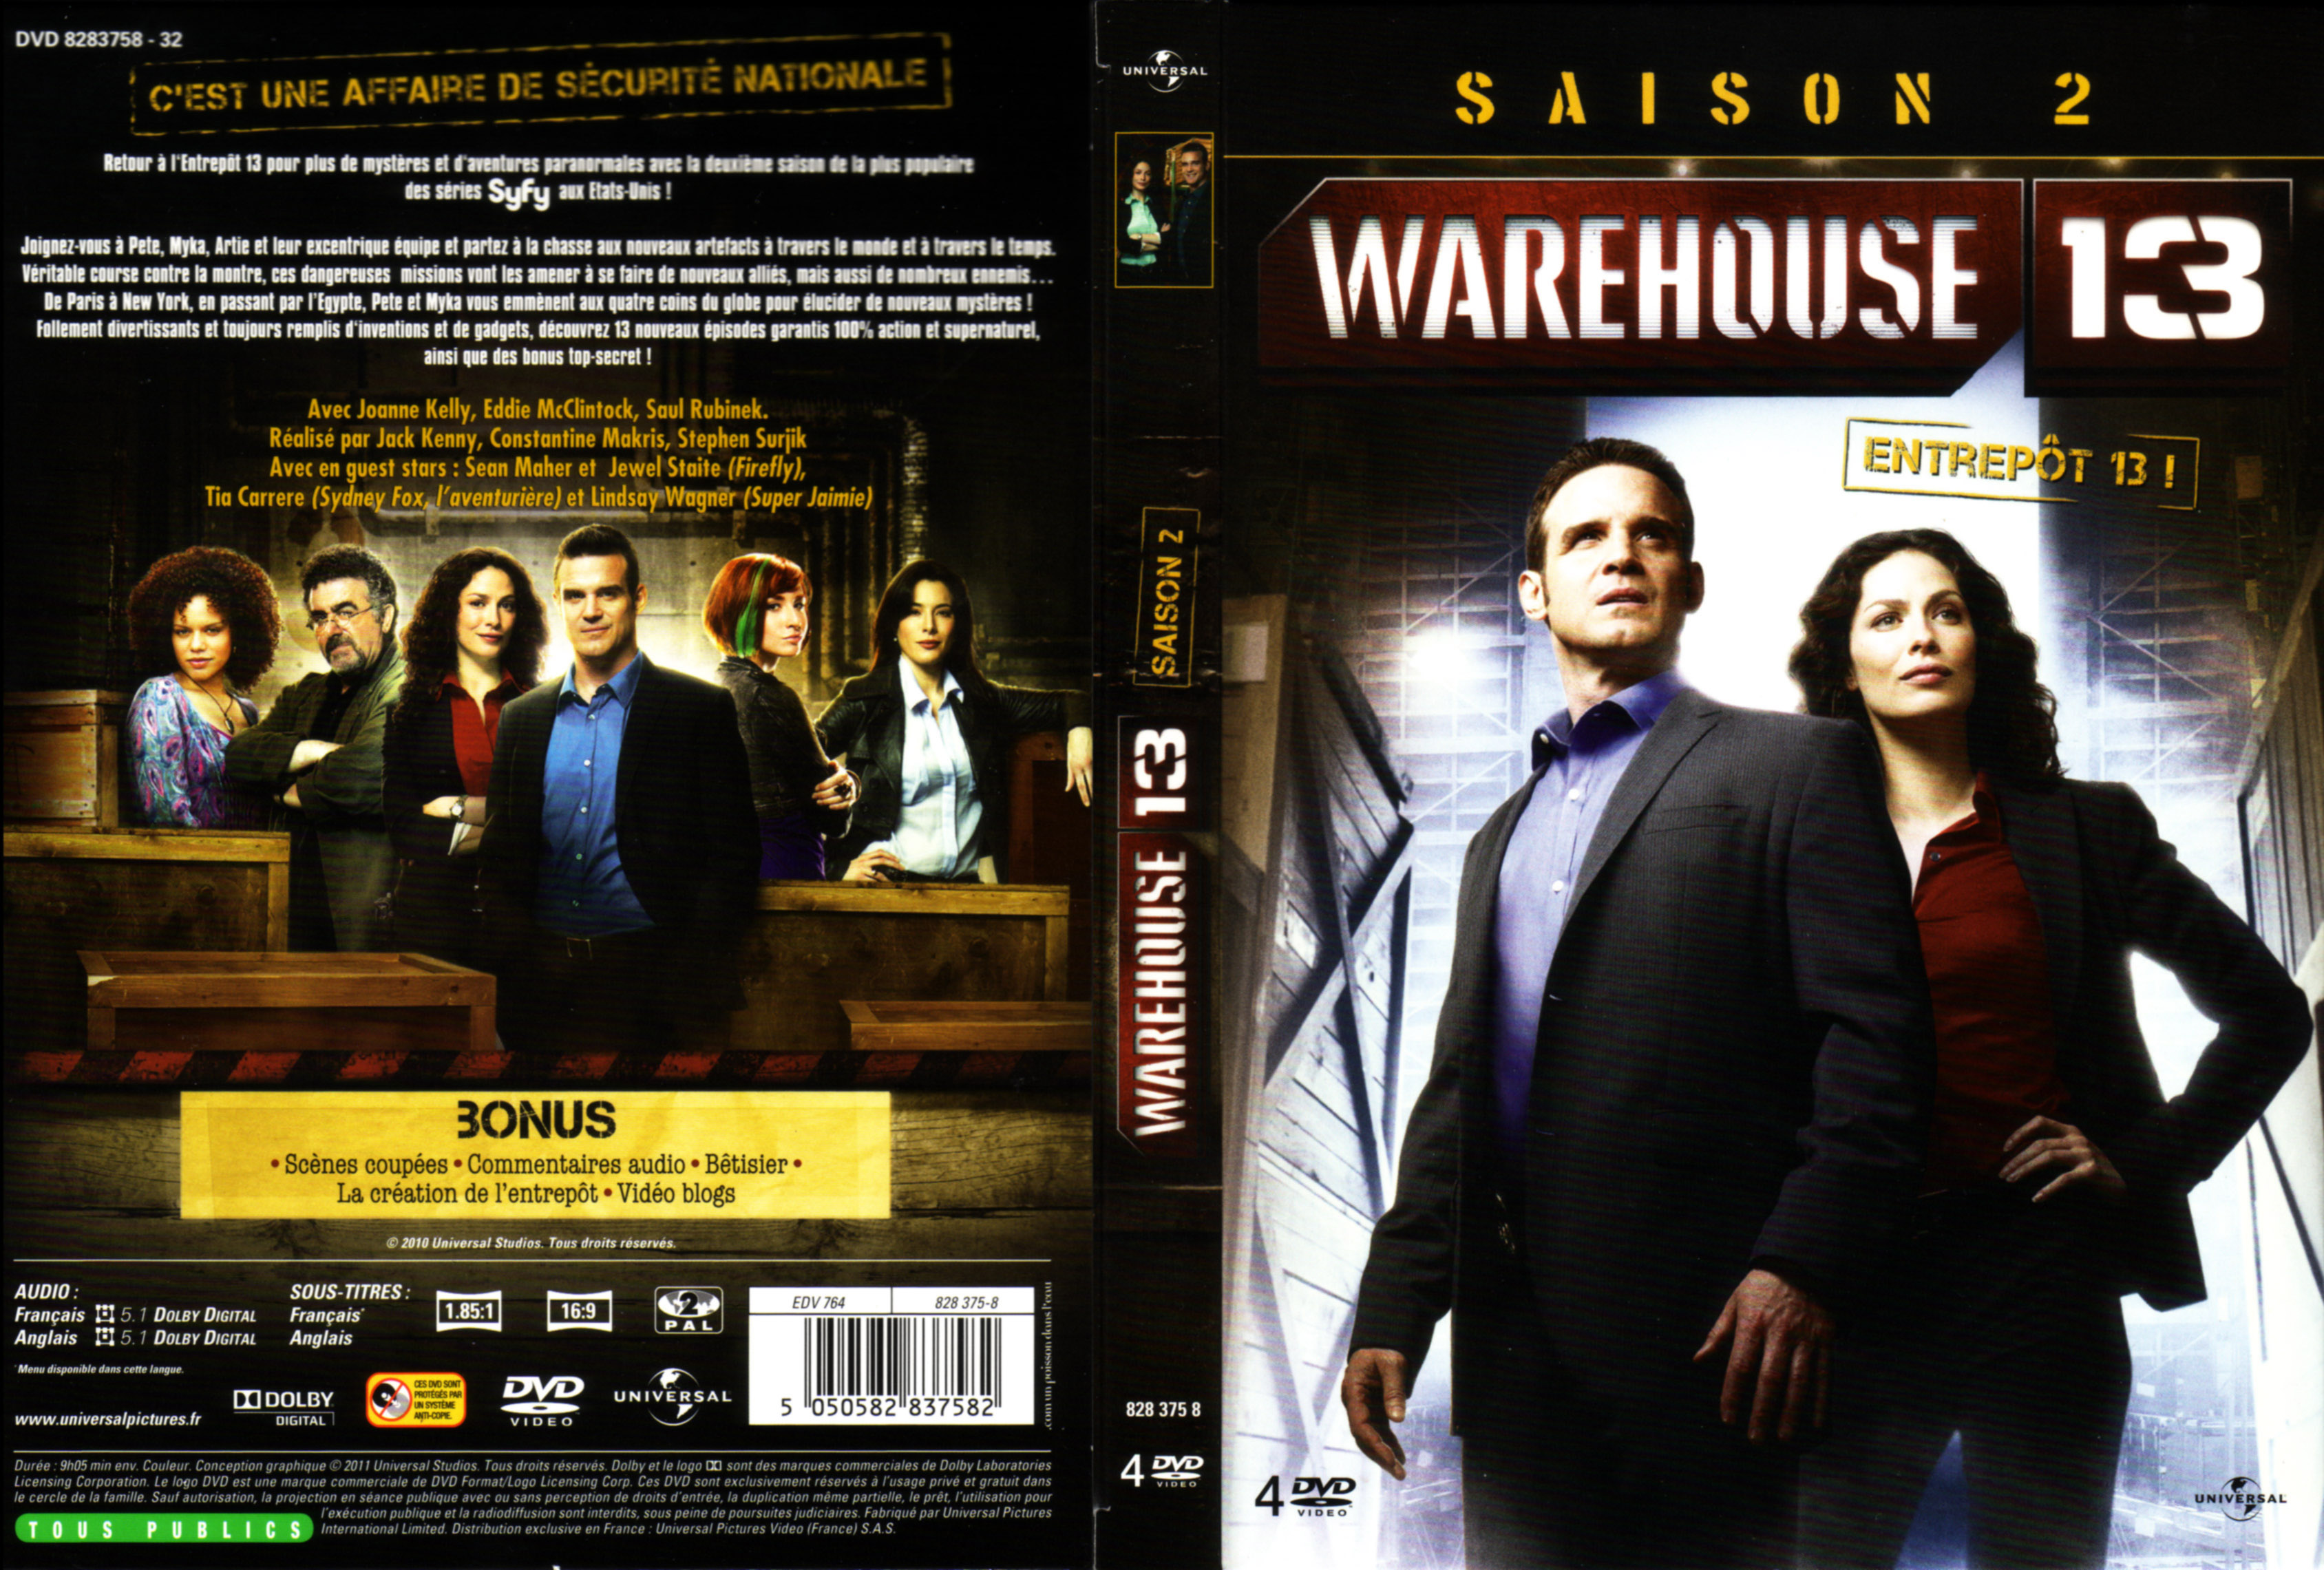 Jaquette DVD Warehouse 13 Saison 2